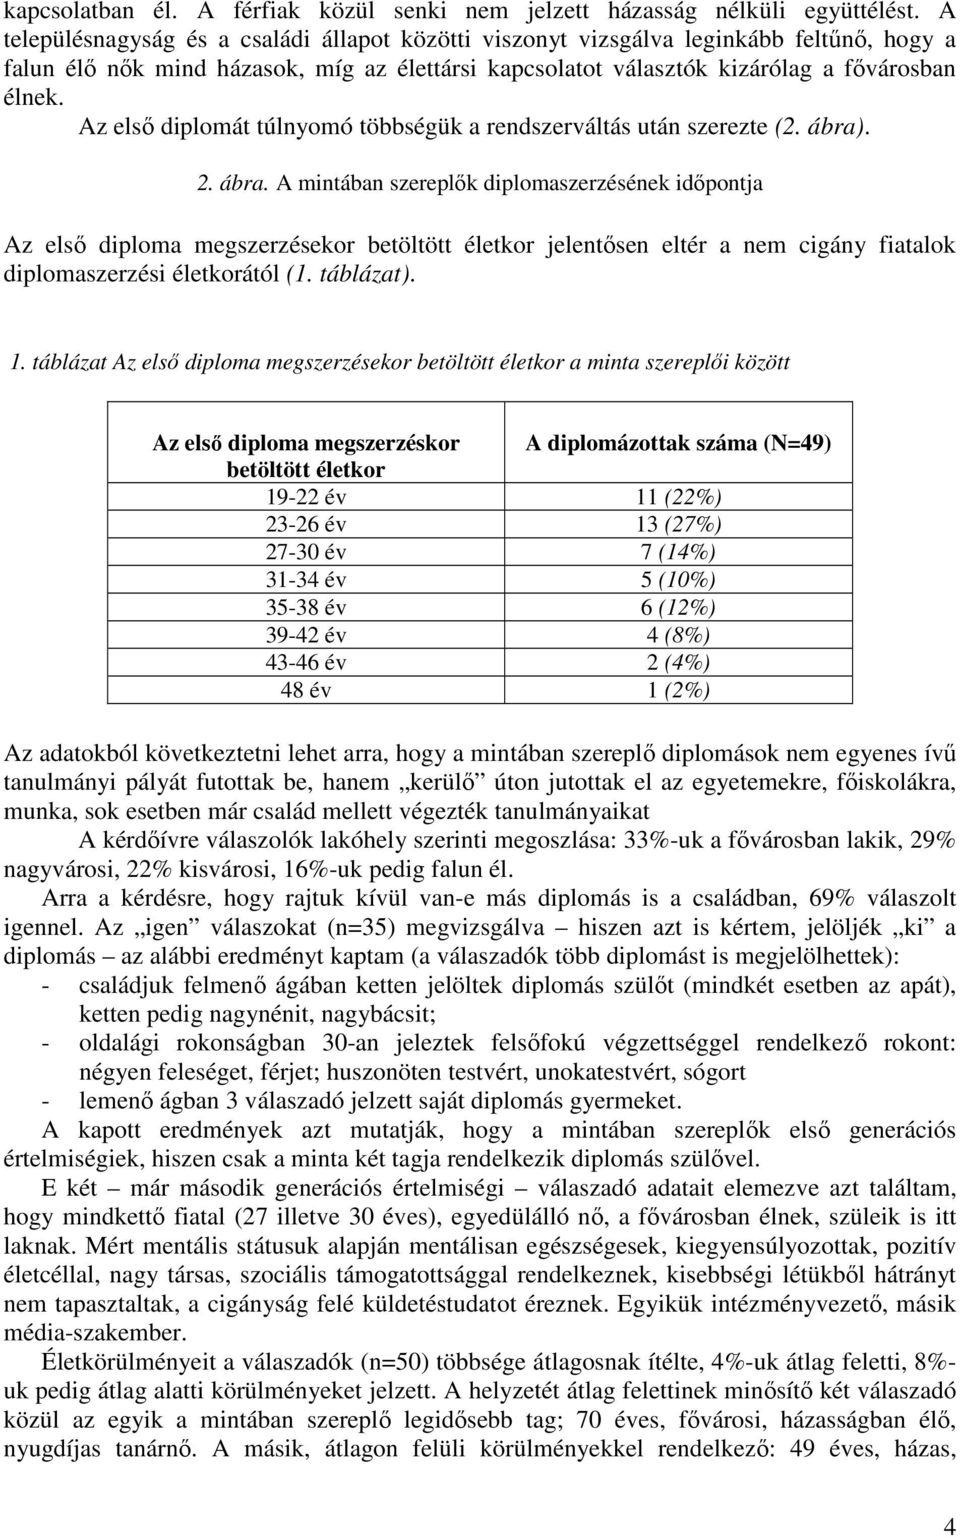 Az elsı diplomát túlnyomó többségük a rendszerváltás után szerezte (2. ábra)